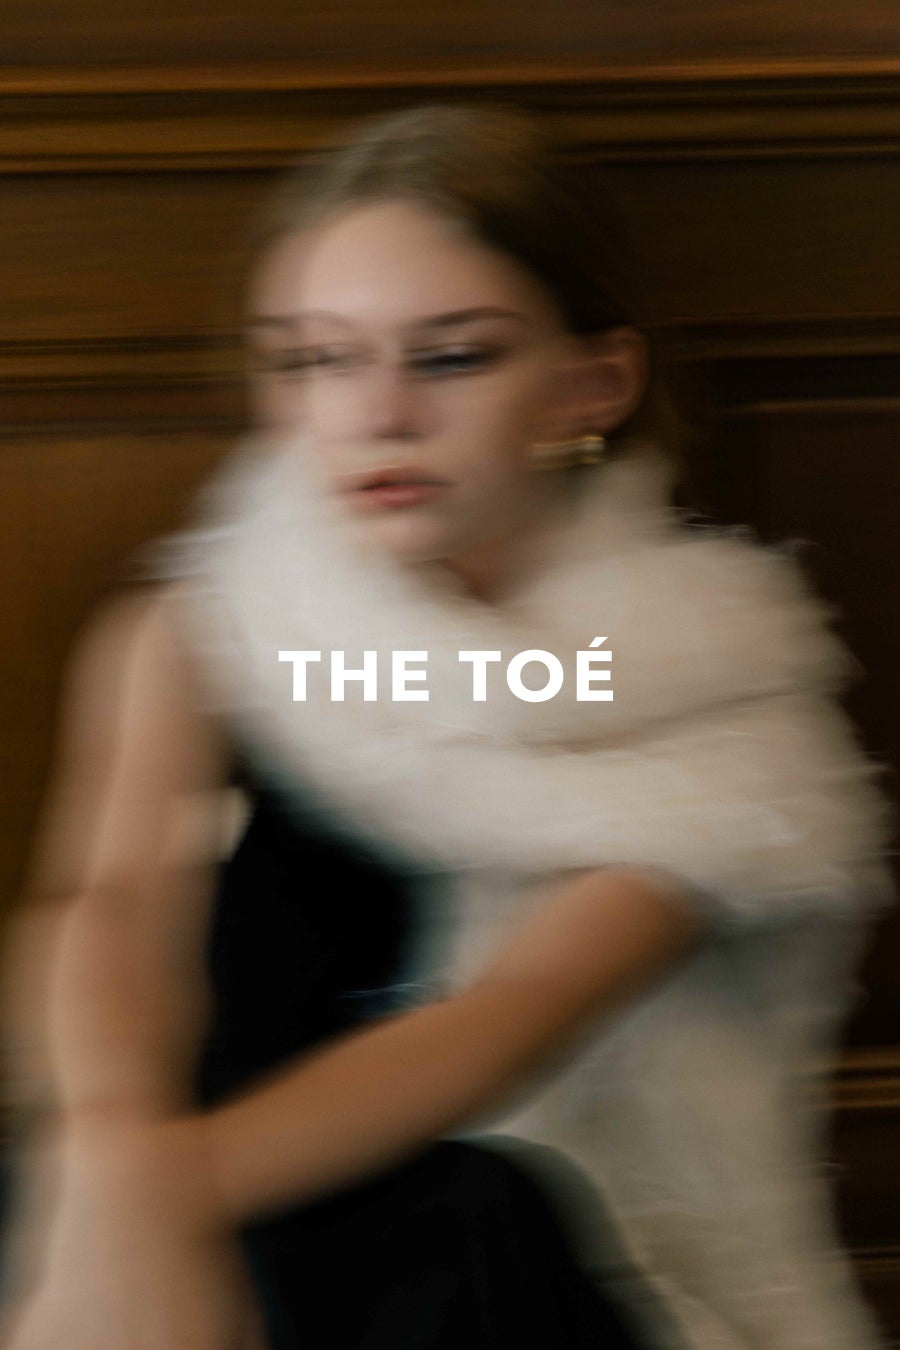 D2Cブランド初、世界4都市でコレクションの発表を行うアパレルブランド「THE TOÉ」がスタート。